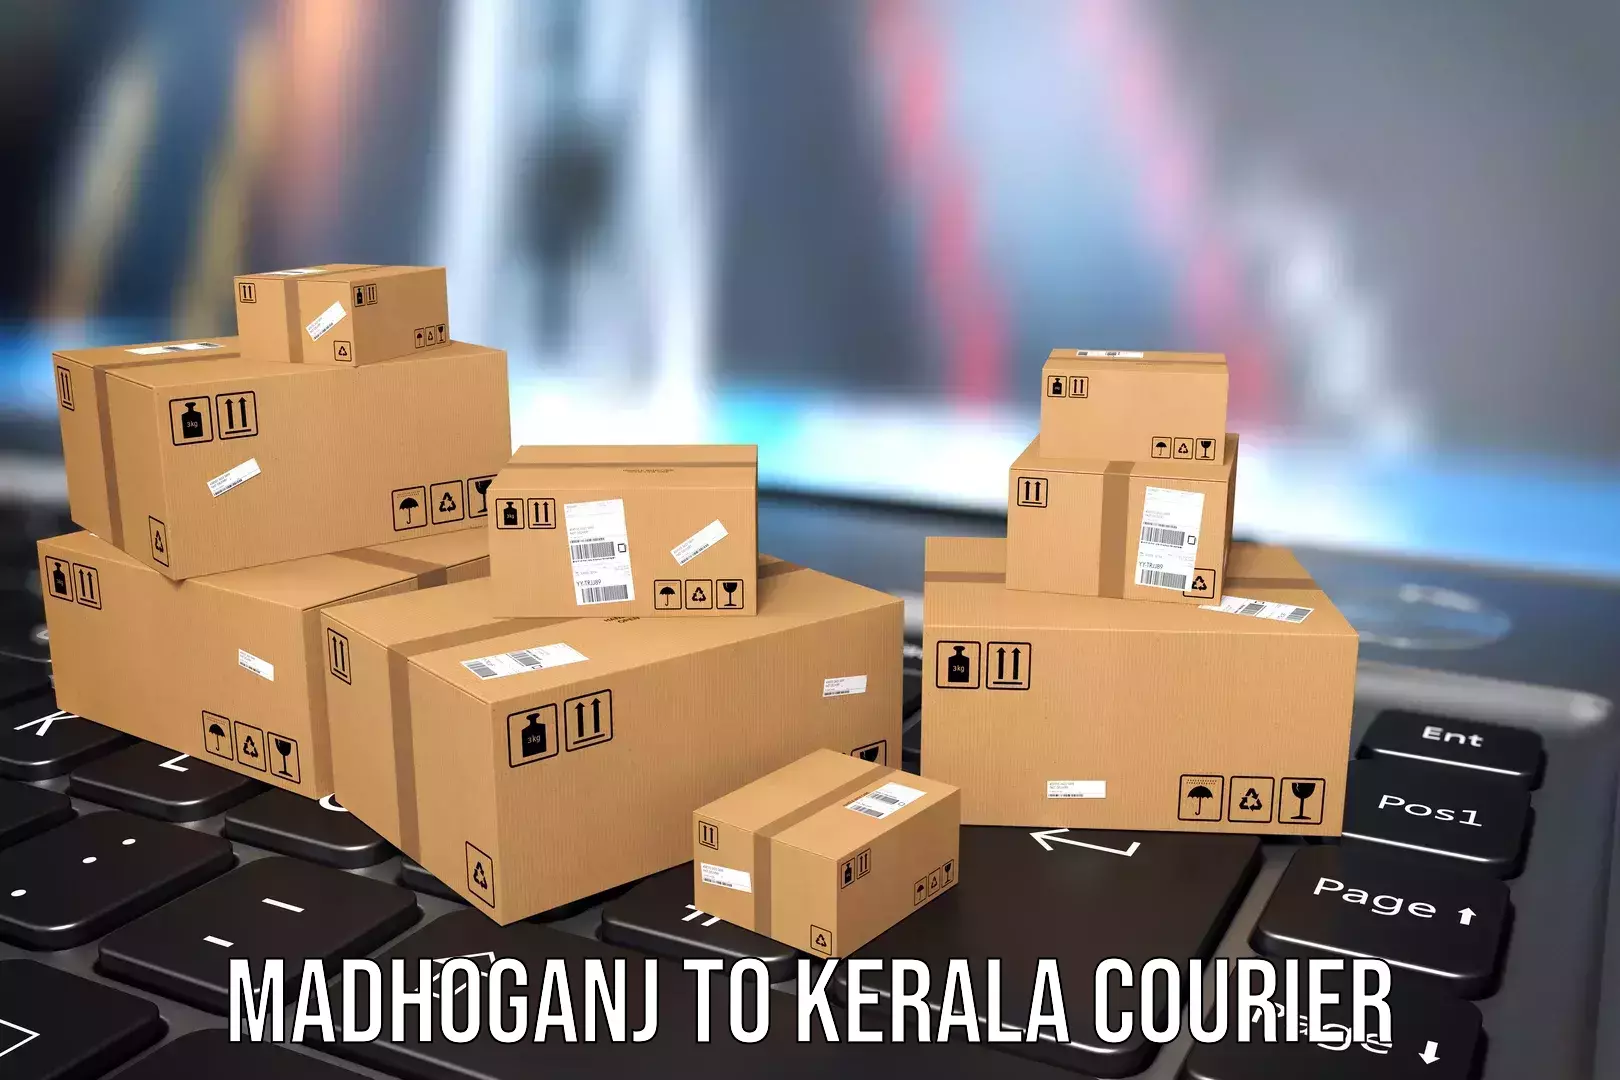 Luggage shipment tracking Madhoganj to Munnar